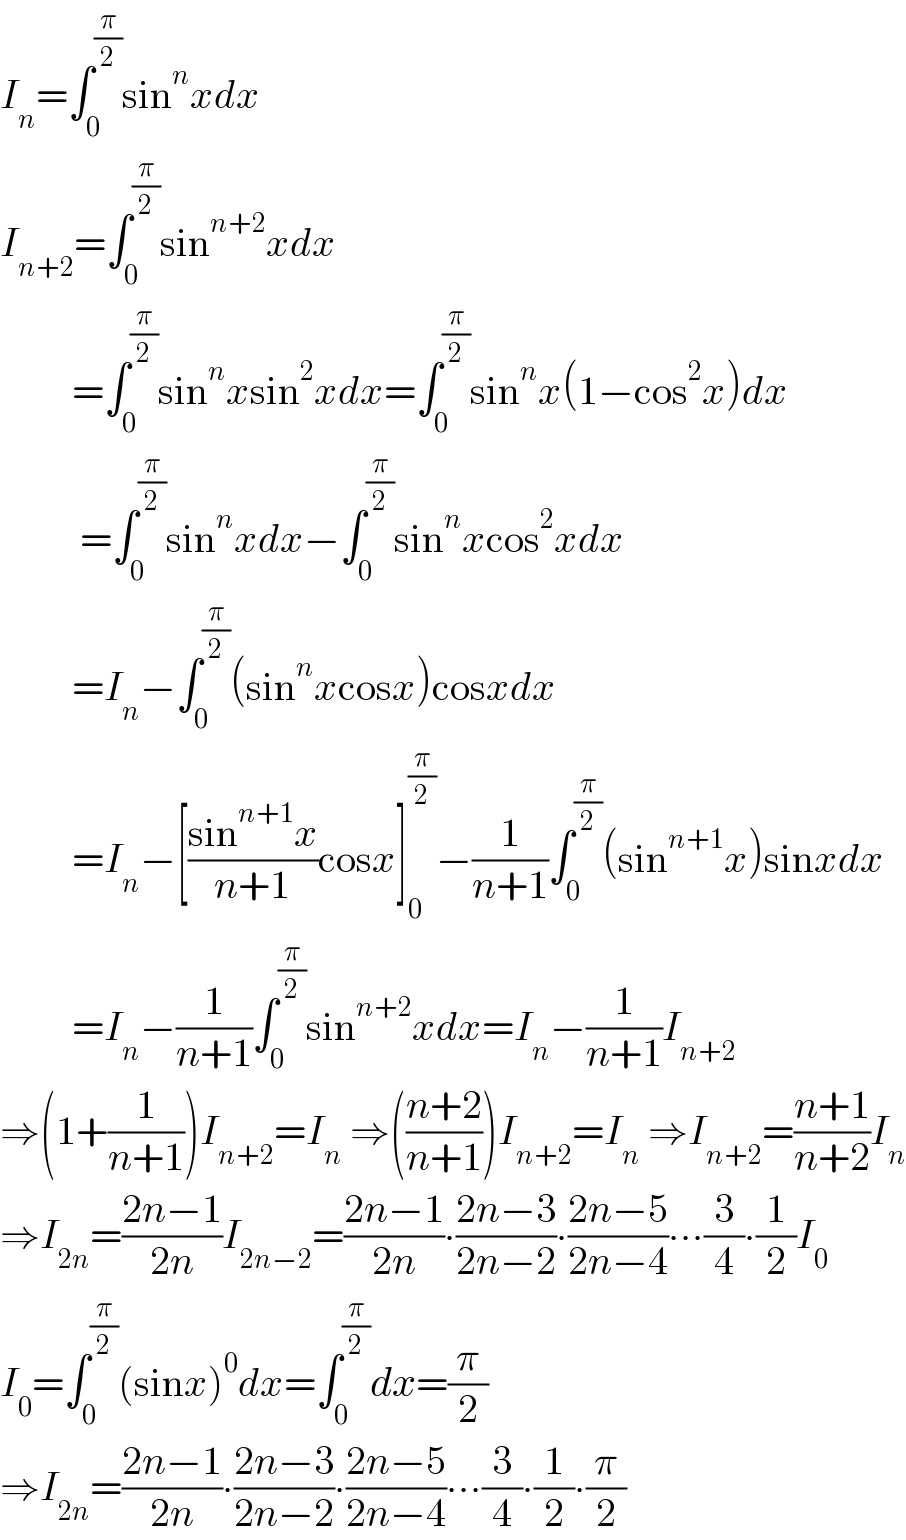 I_n =∫_0 ^(π/2) sin^n xdx  I_(n+2) =∫_0 ^(π/2) sin^(n+2) xdx           =∫_0 ^(π/2) sin^n xsin^2 xdx=∫_0 ^(π/2) sin^n x(1−cos^2 x)dx            =∫_0 ^(π/2) sin^n xdx−∫_0 ^(π/2) sin^n xcos^2 xdx           =I_n −∫_0 ^(π/2) (sin^n xcosx)cosxdx           =I_n −[((sin^(n+1) x)/(n+1))cosx]_0 ^(π/2) −(1/(n+1))∫_0 ^(π/2) (sin^(n+1) x)sinxdx           =I_n −(1/(n+1))∫_0 ^(π/2) sin^(n+2) xdx=I_n −(1/(n+1))I_(n+2)   ⇒(1+(1/(n+1)))I_(n+2) =I_n  ⇒(((n+2)/(n+1)))I_(n+2) =I_n  ⇒I_(n+2) =((n+1)/(n+2))I_n   ⇒I_(2n) =((2n−1)/(2n))I_(2n−2) =((2n−1)/(2n))∙((2n−3)/(2n−2))∙((2n−5)/(2n−4))∙∙∙(3/4)∙(1/2)I_0   I_0 =∫_0 ^(π/2) (sinx)^0 dx=∫_0 ^(π/2) dx=(π/2)  ⇒I_(2n) =((2n−1)/(2n))∙((2n−3)/(2n−2))∙((2n−5)/(2n−4))∙∙∙(3/4)∙(1/2)∙(π/2)  